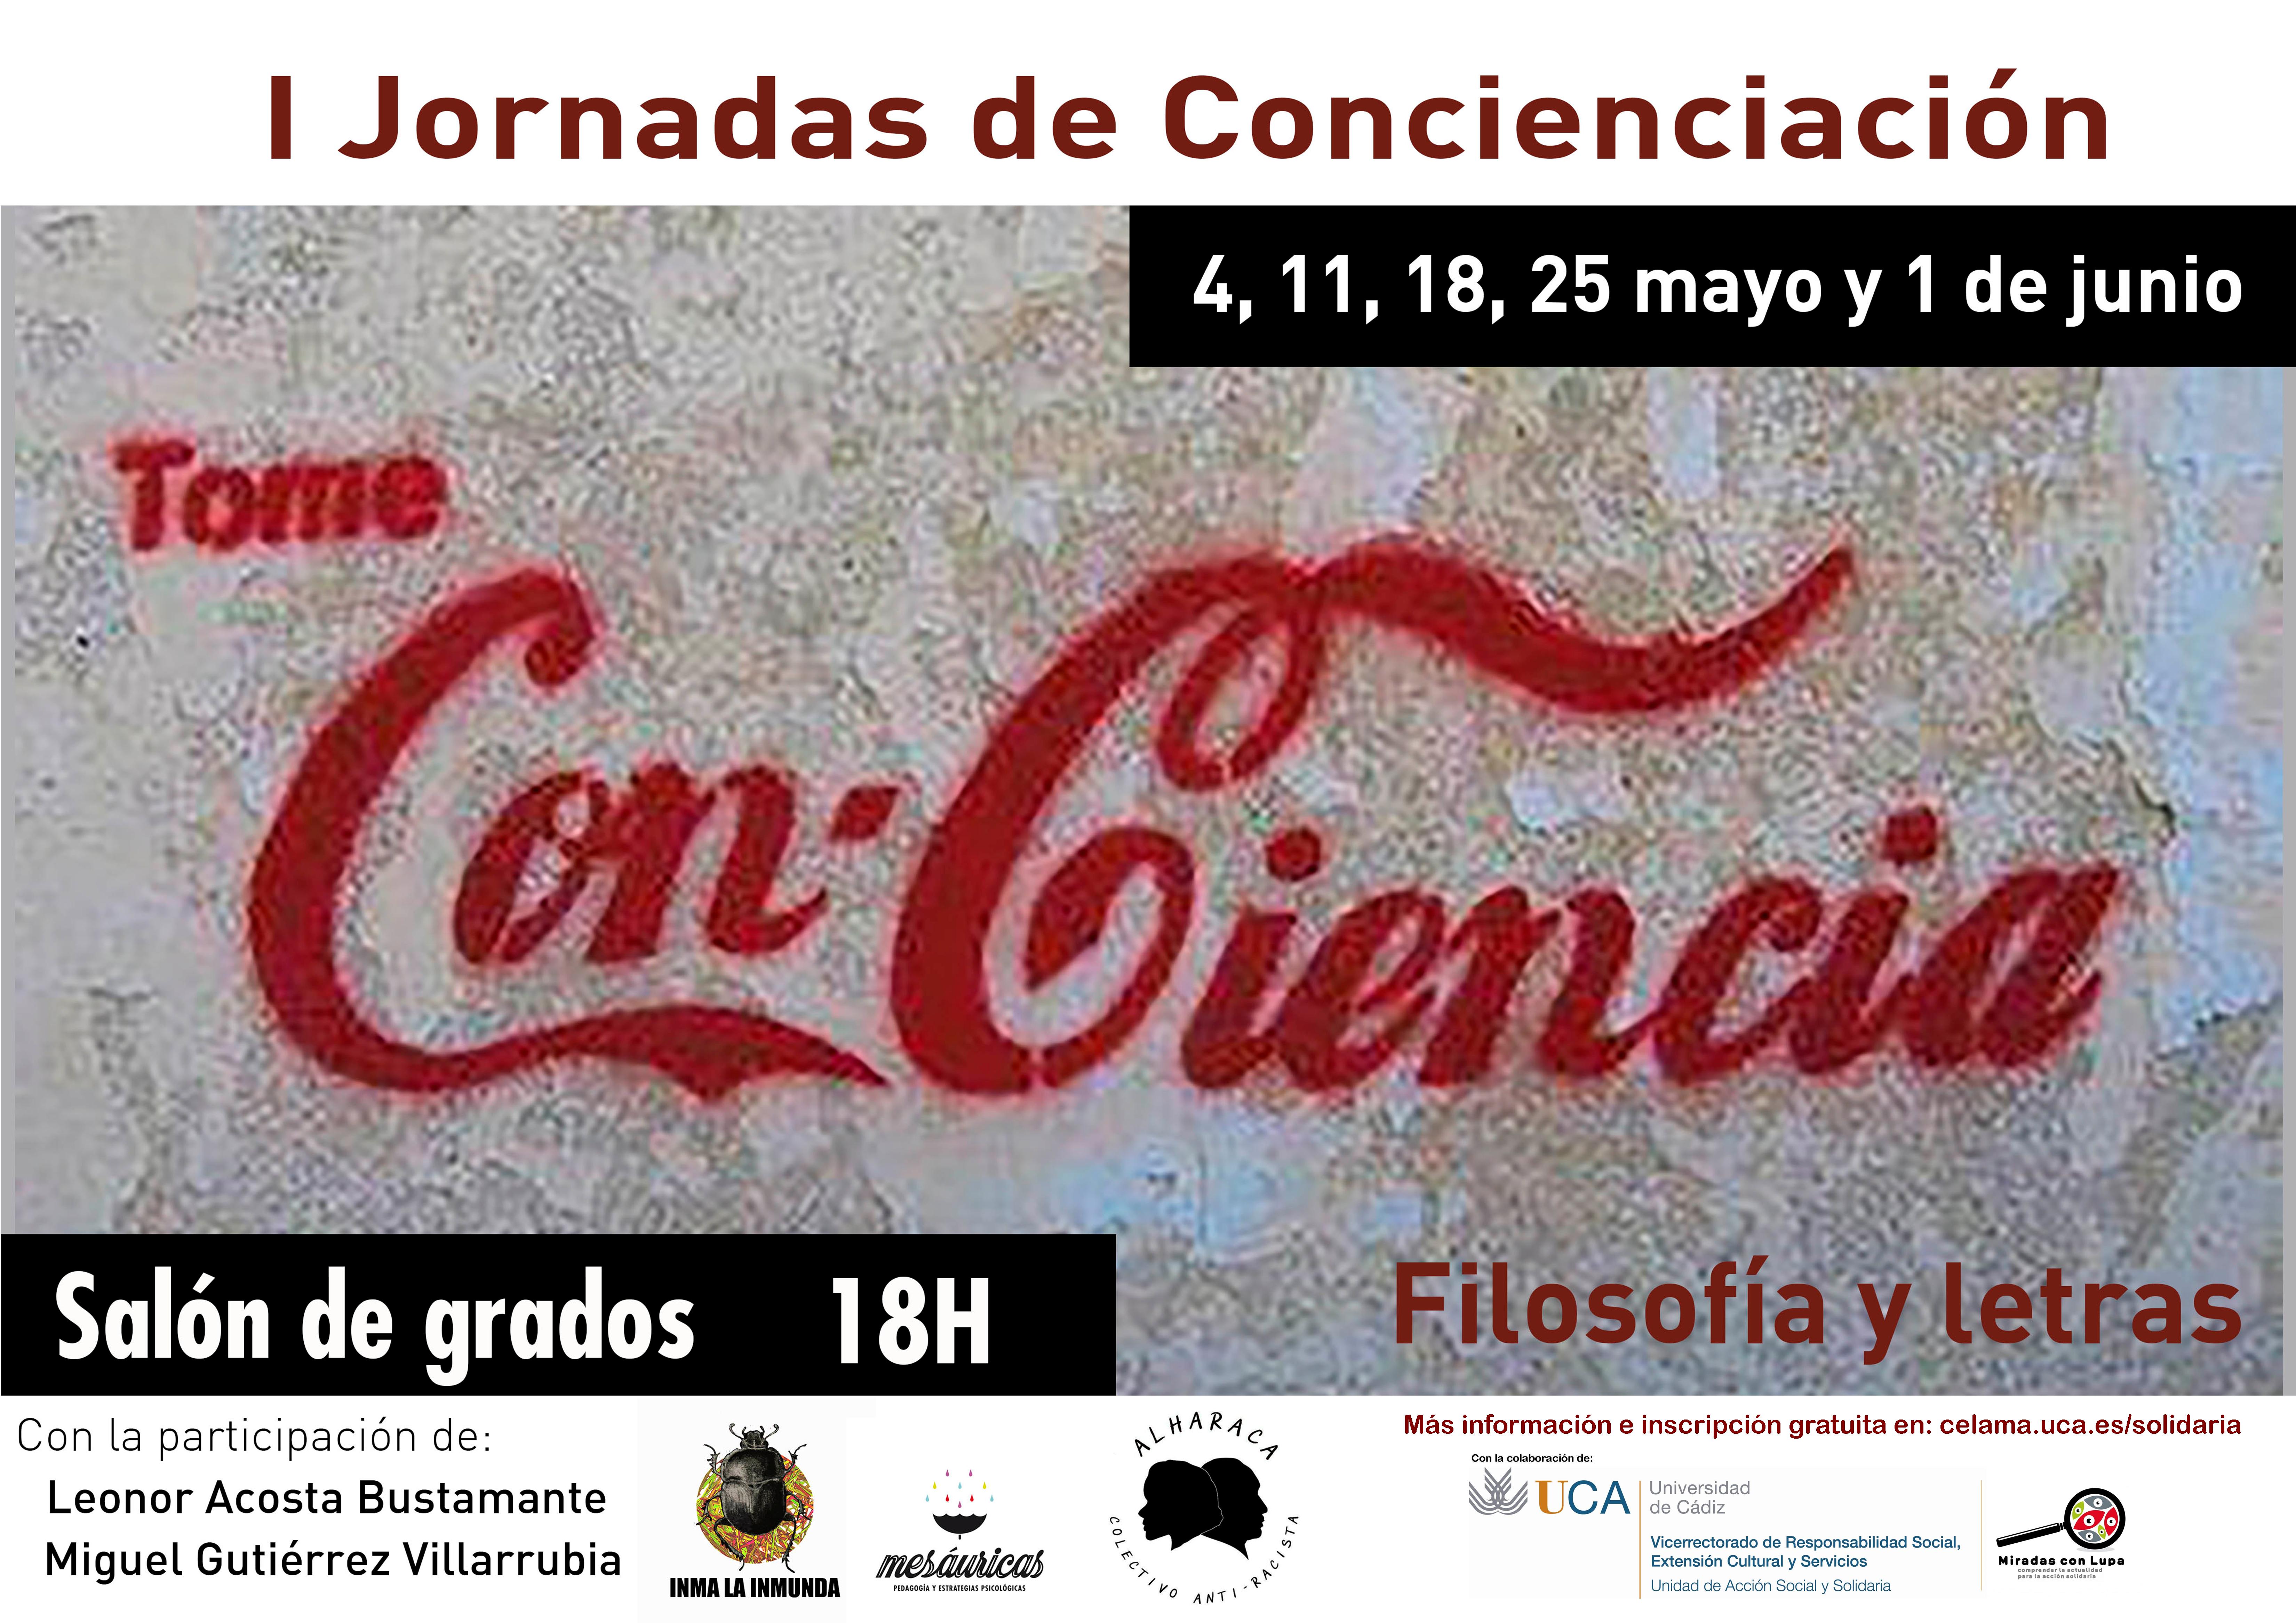 I Jornadas de Concienciación en Filosofía y Letras. 4, 11, 18 y 25 de mayo y 1 de junio